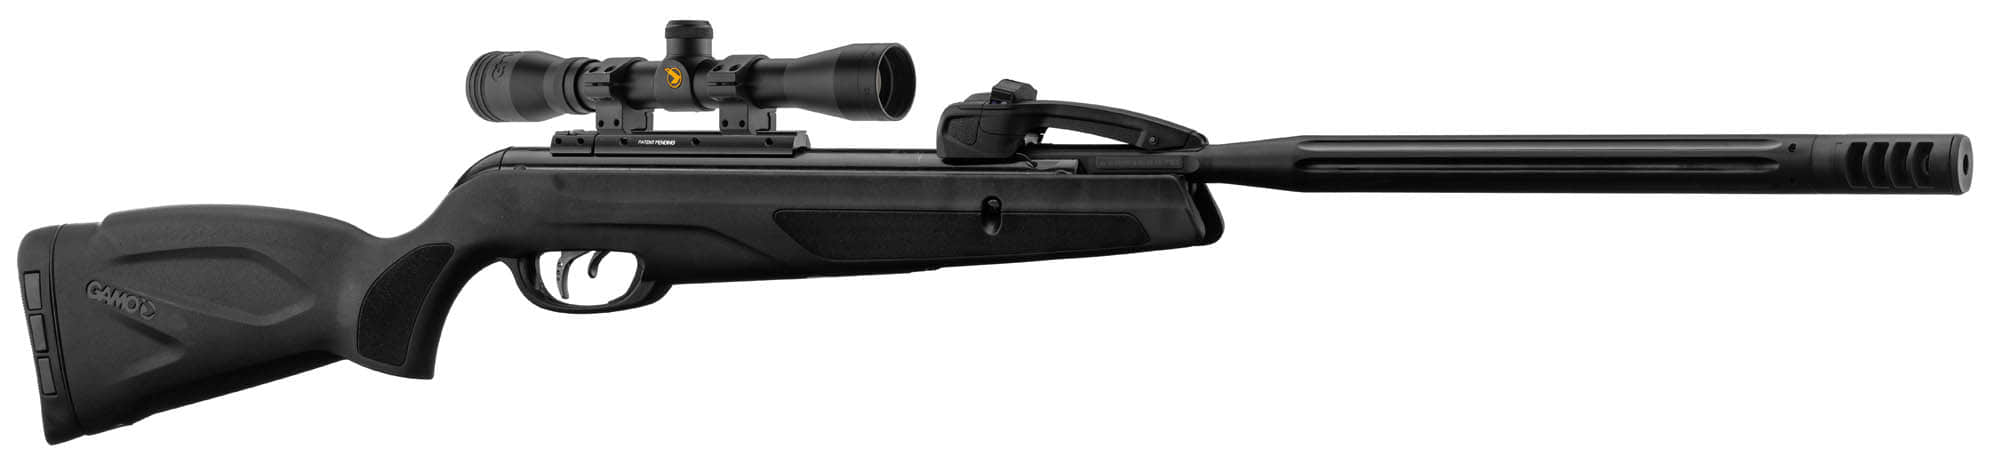 CA1701-10-Carabine Gamo Replay 10 Maxxim + lunnete 4X32 - Cal. 4.5 mm - CA1701